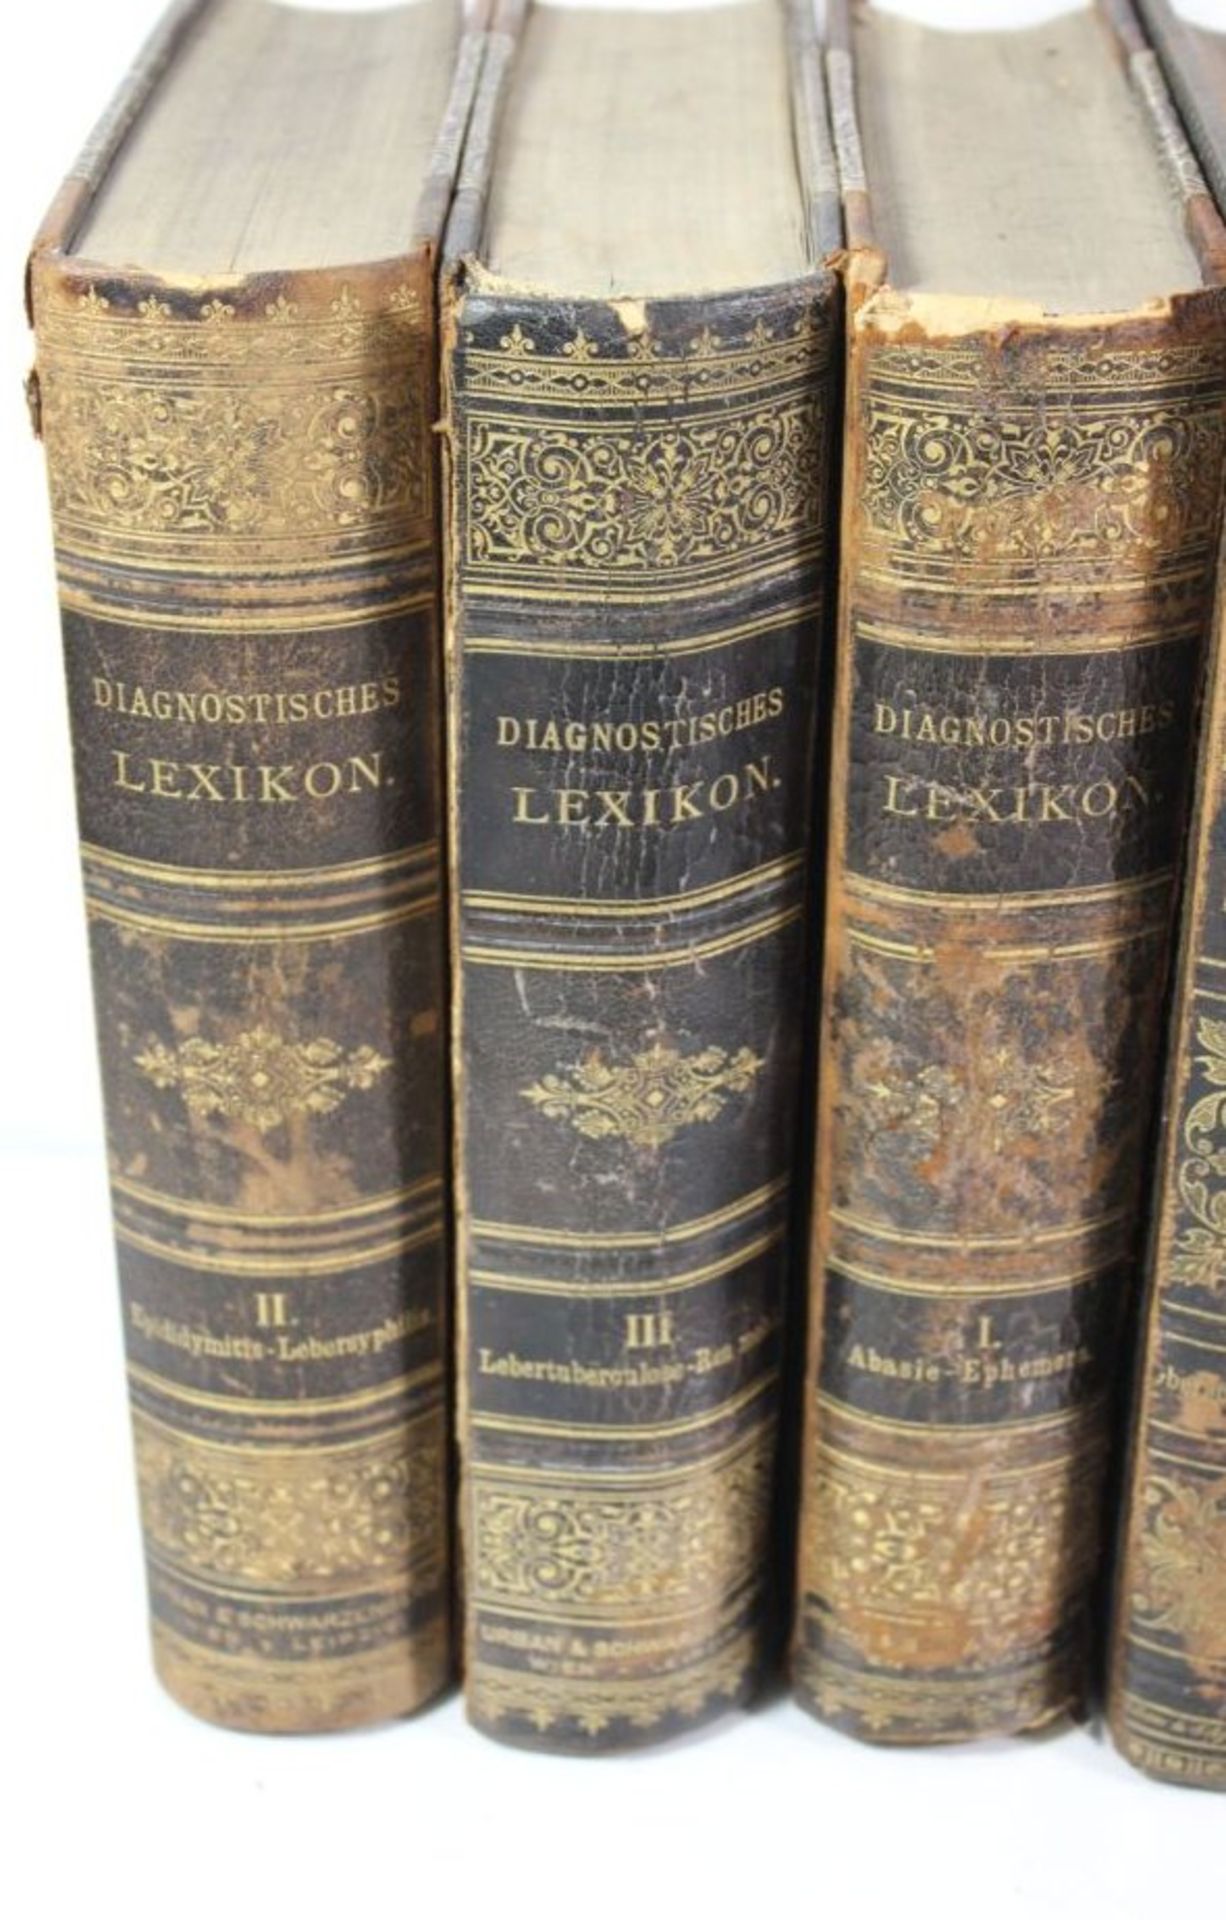 3 Bände Diagnostisches Lexikon 1893 Band 1-3, 6 Bände Real-Encyclopädie der Gesammten Heilkunde 1882 - Bild 2 aus 3